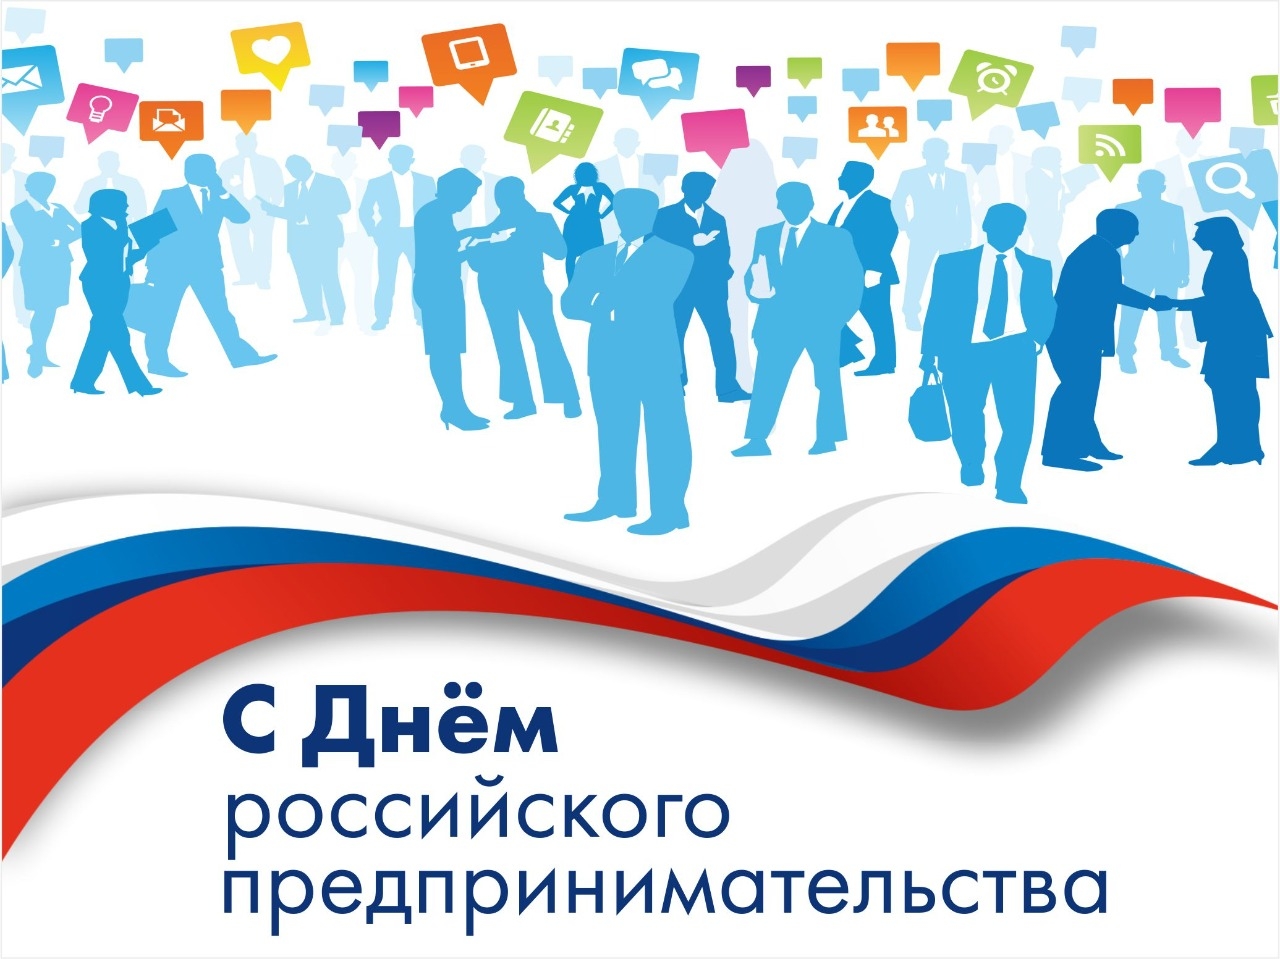 Сегодня отмечается День российского предпринимательства.